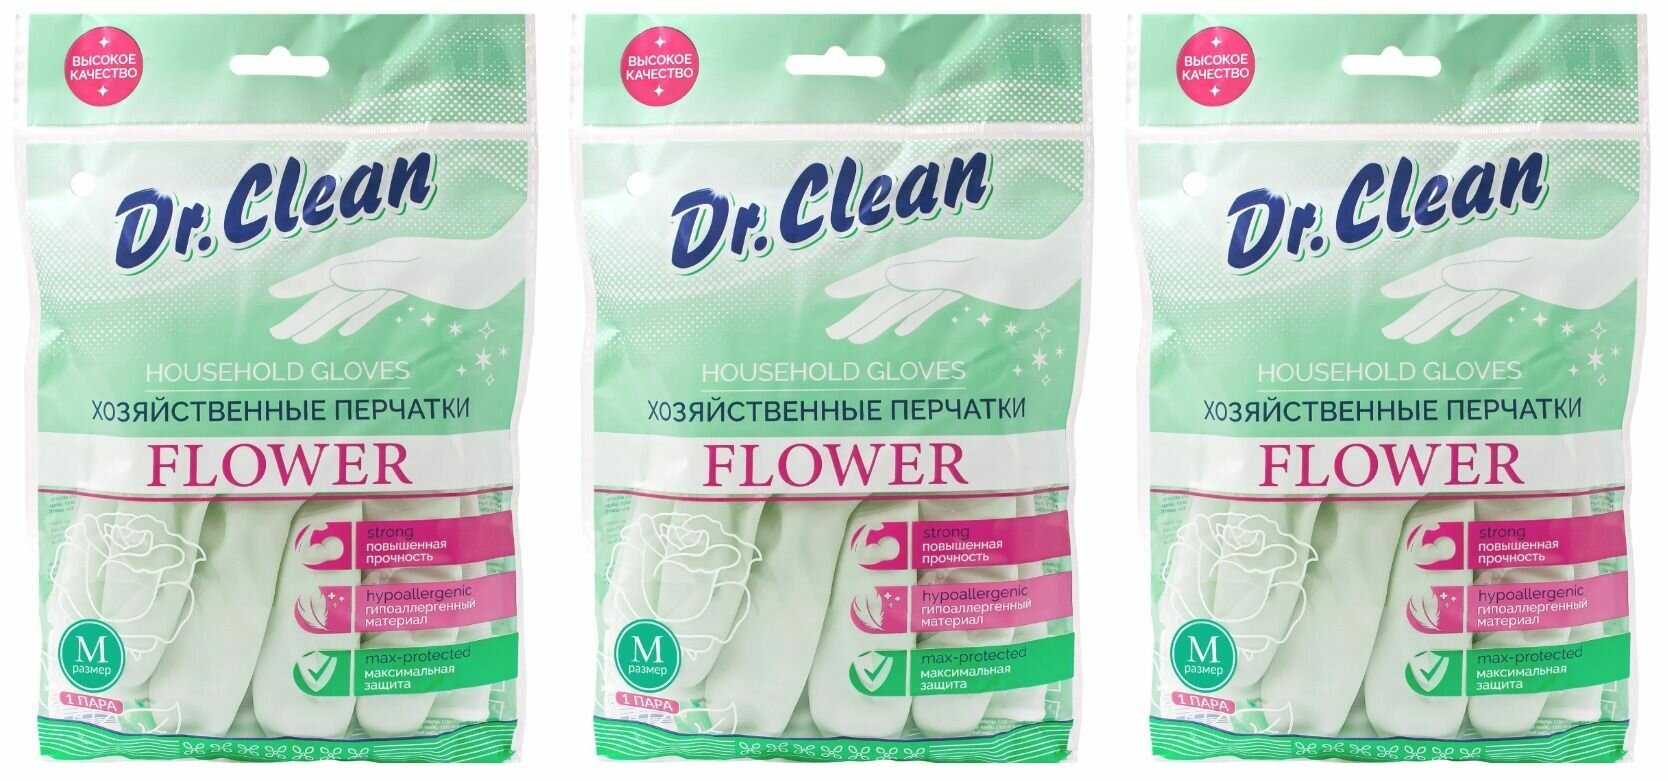 Dr. Clean Перчатки хозяйственные Flower поливиниловые размер M 3 уп